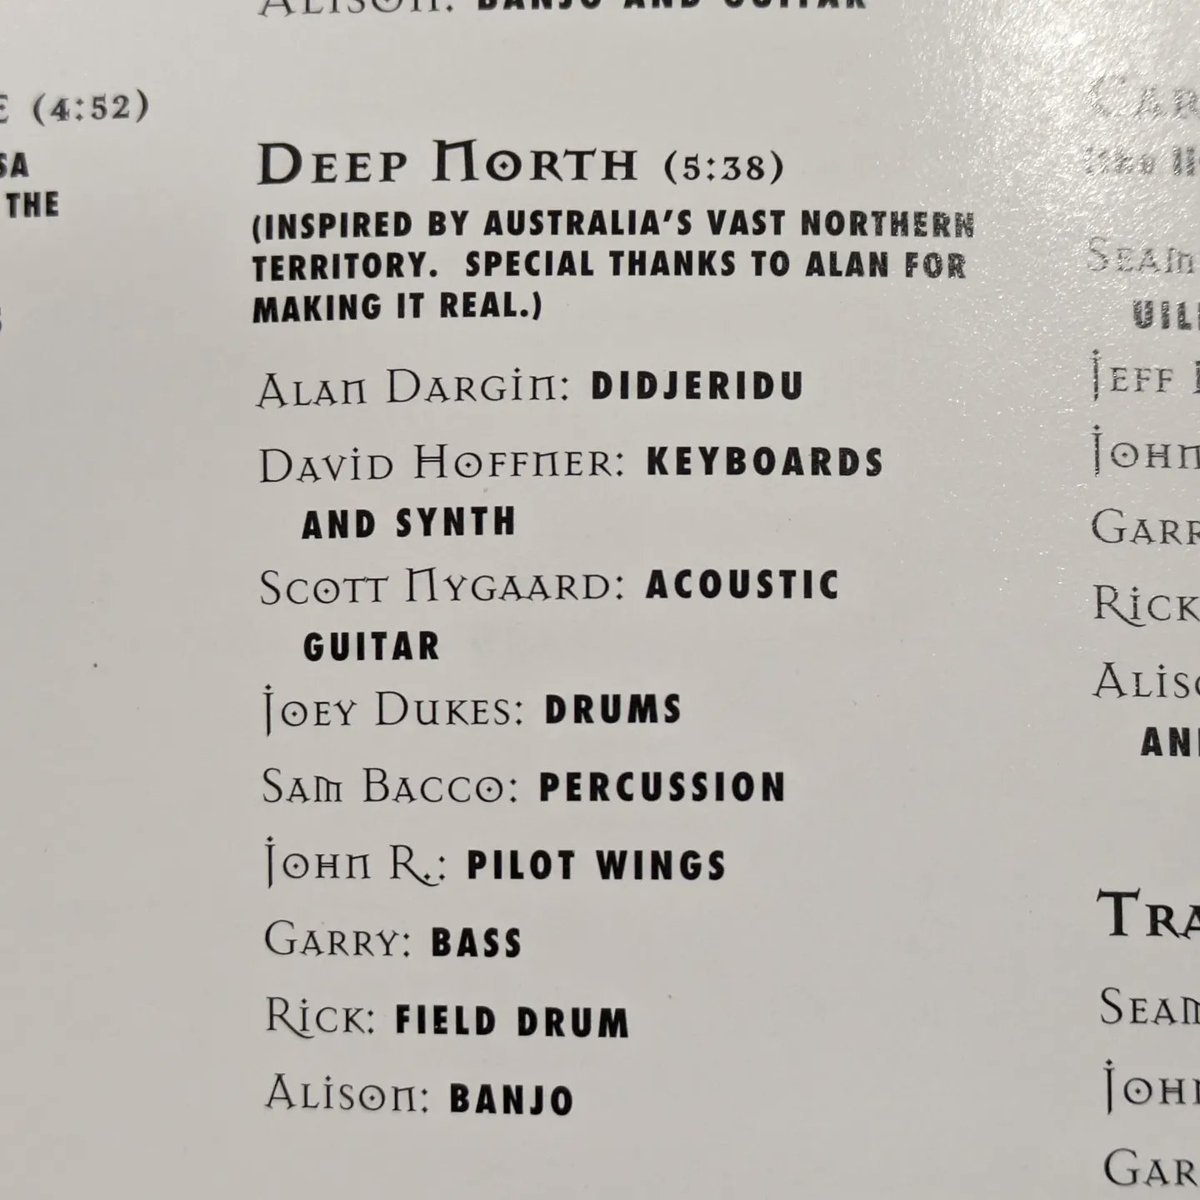 30年前のアルバム「Look Left」でディジュリドゥと共演してたの思い出しました。
「じぶこん」カッコよかった。このAlisonのYoutube「Deep North」もカッコいい～
⇩

#じぶこん #alisonbrown #ディジュリドゥ #didgeridoo #didjeridoo